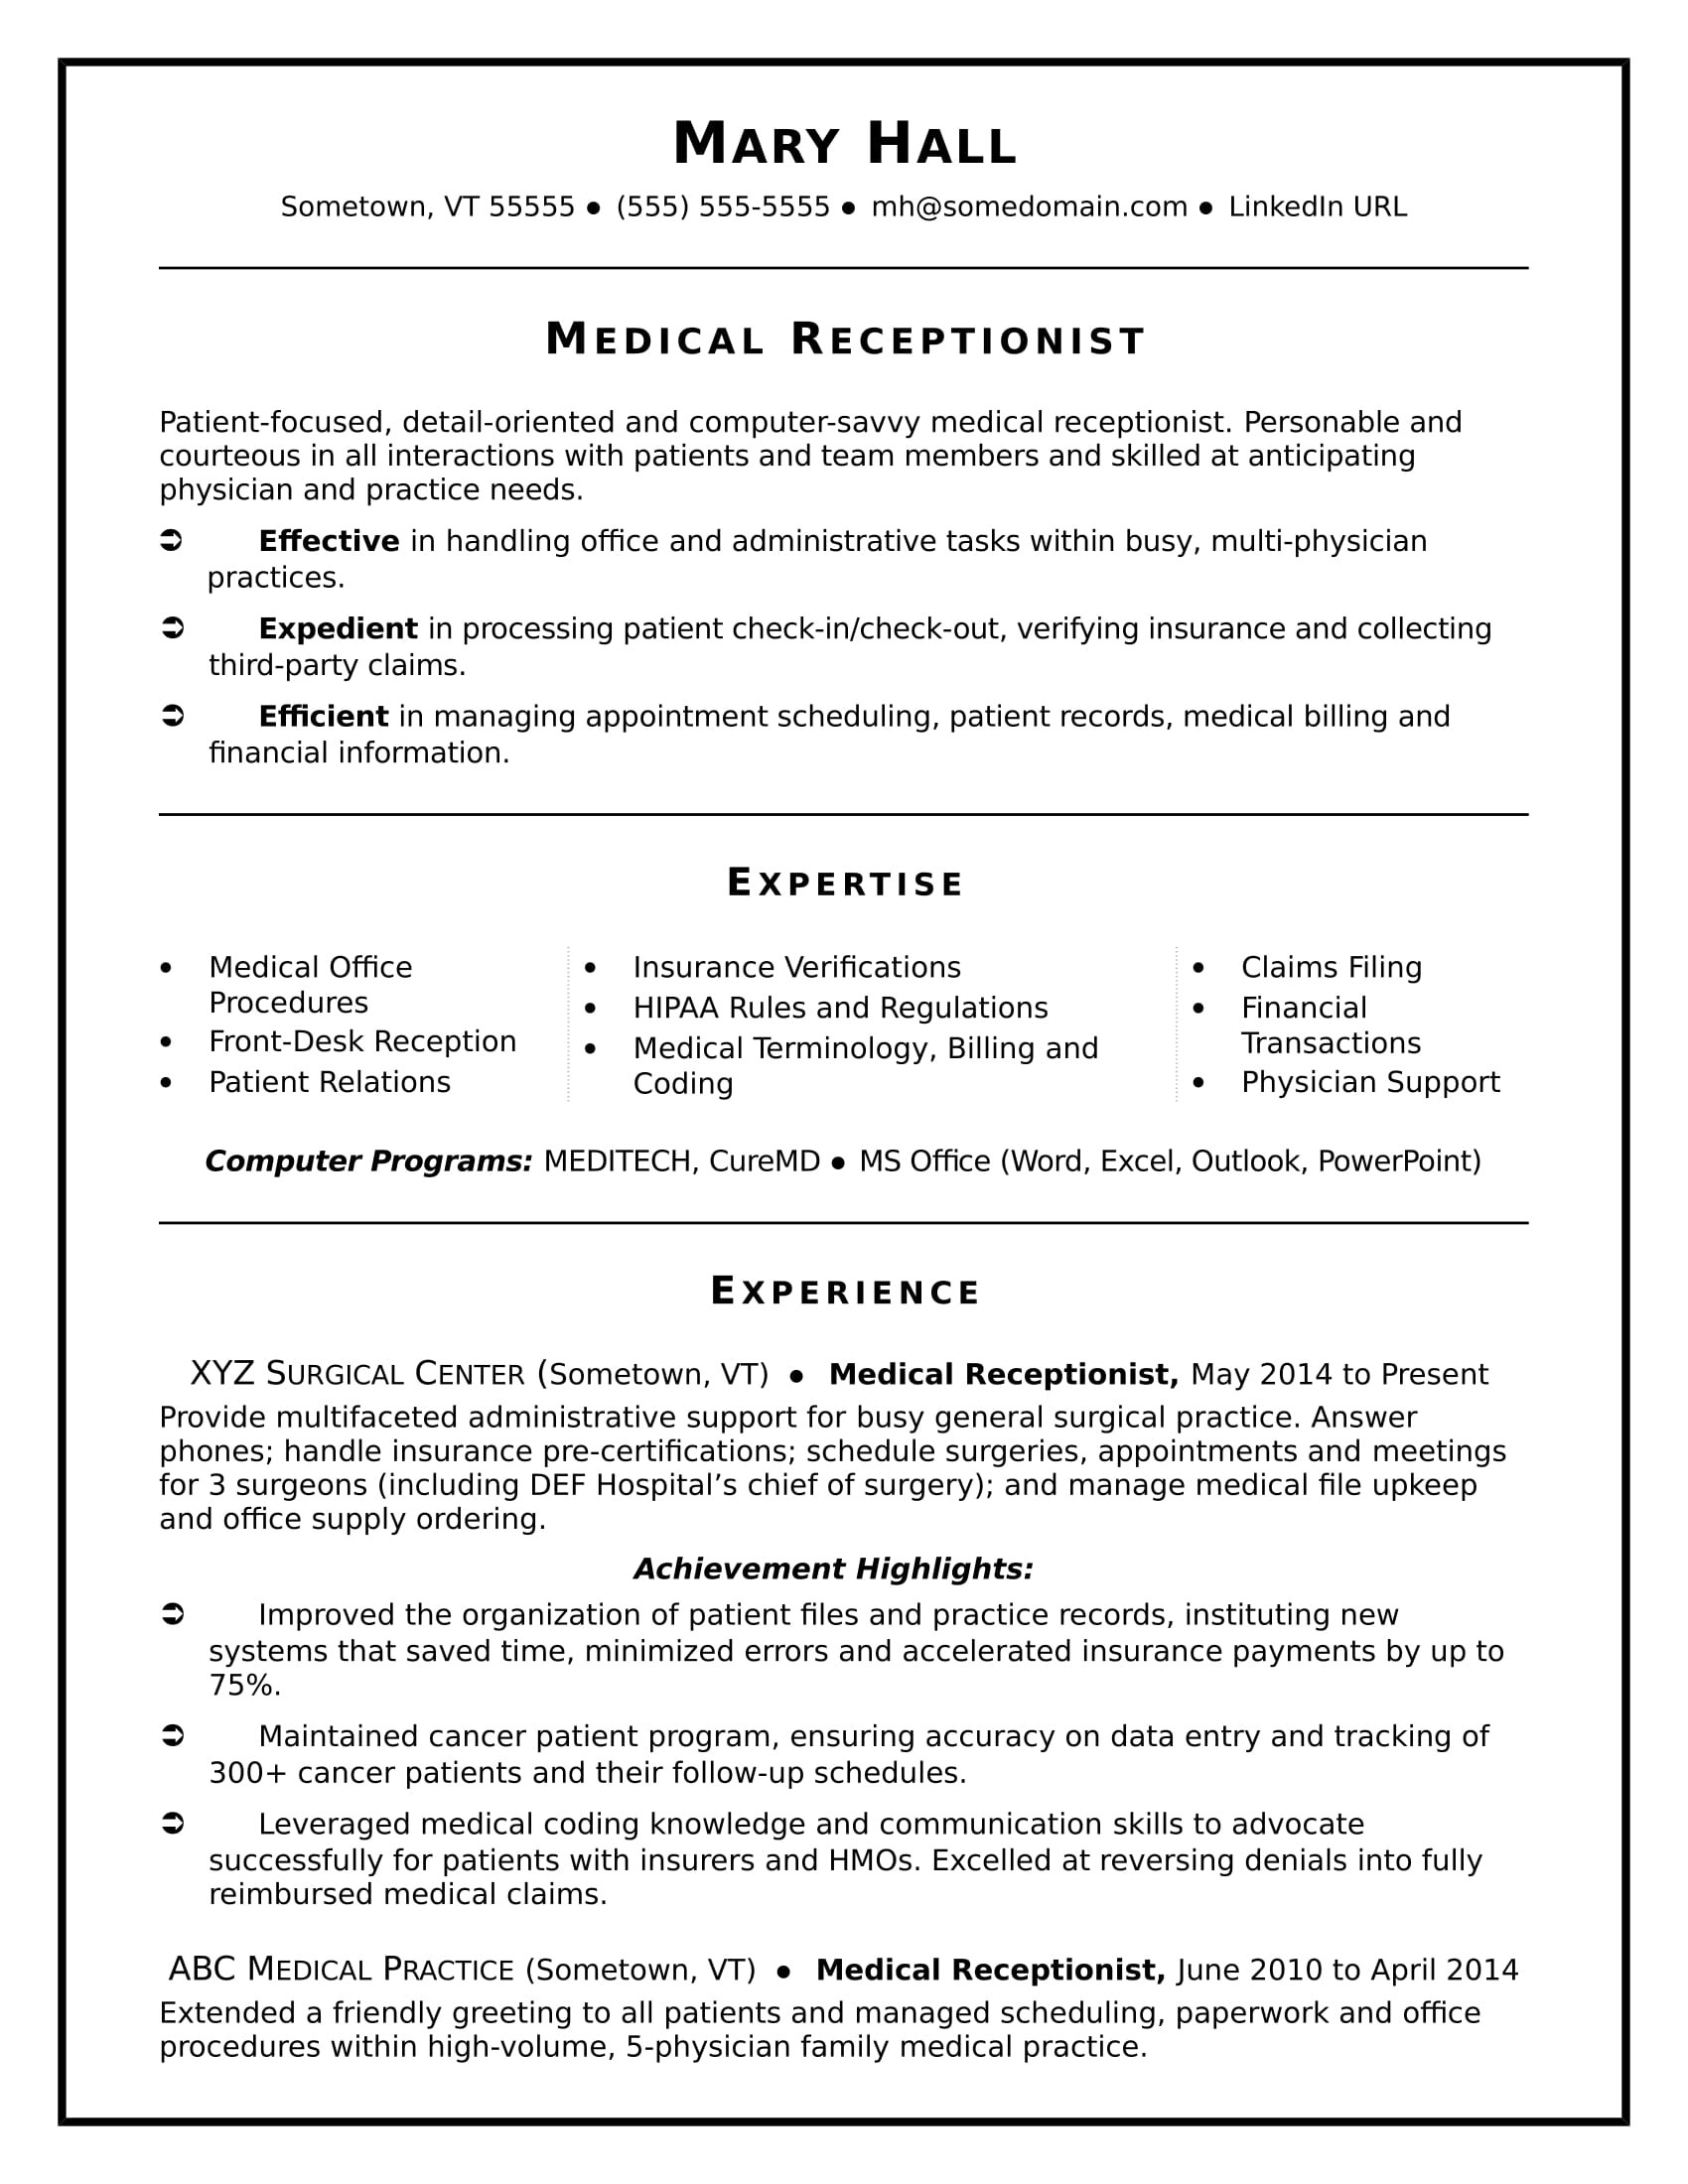 Samples Of Medical Office Manager Resume Medical Receptionist Resume Sample Monster.com